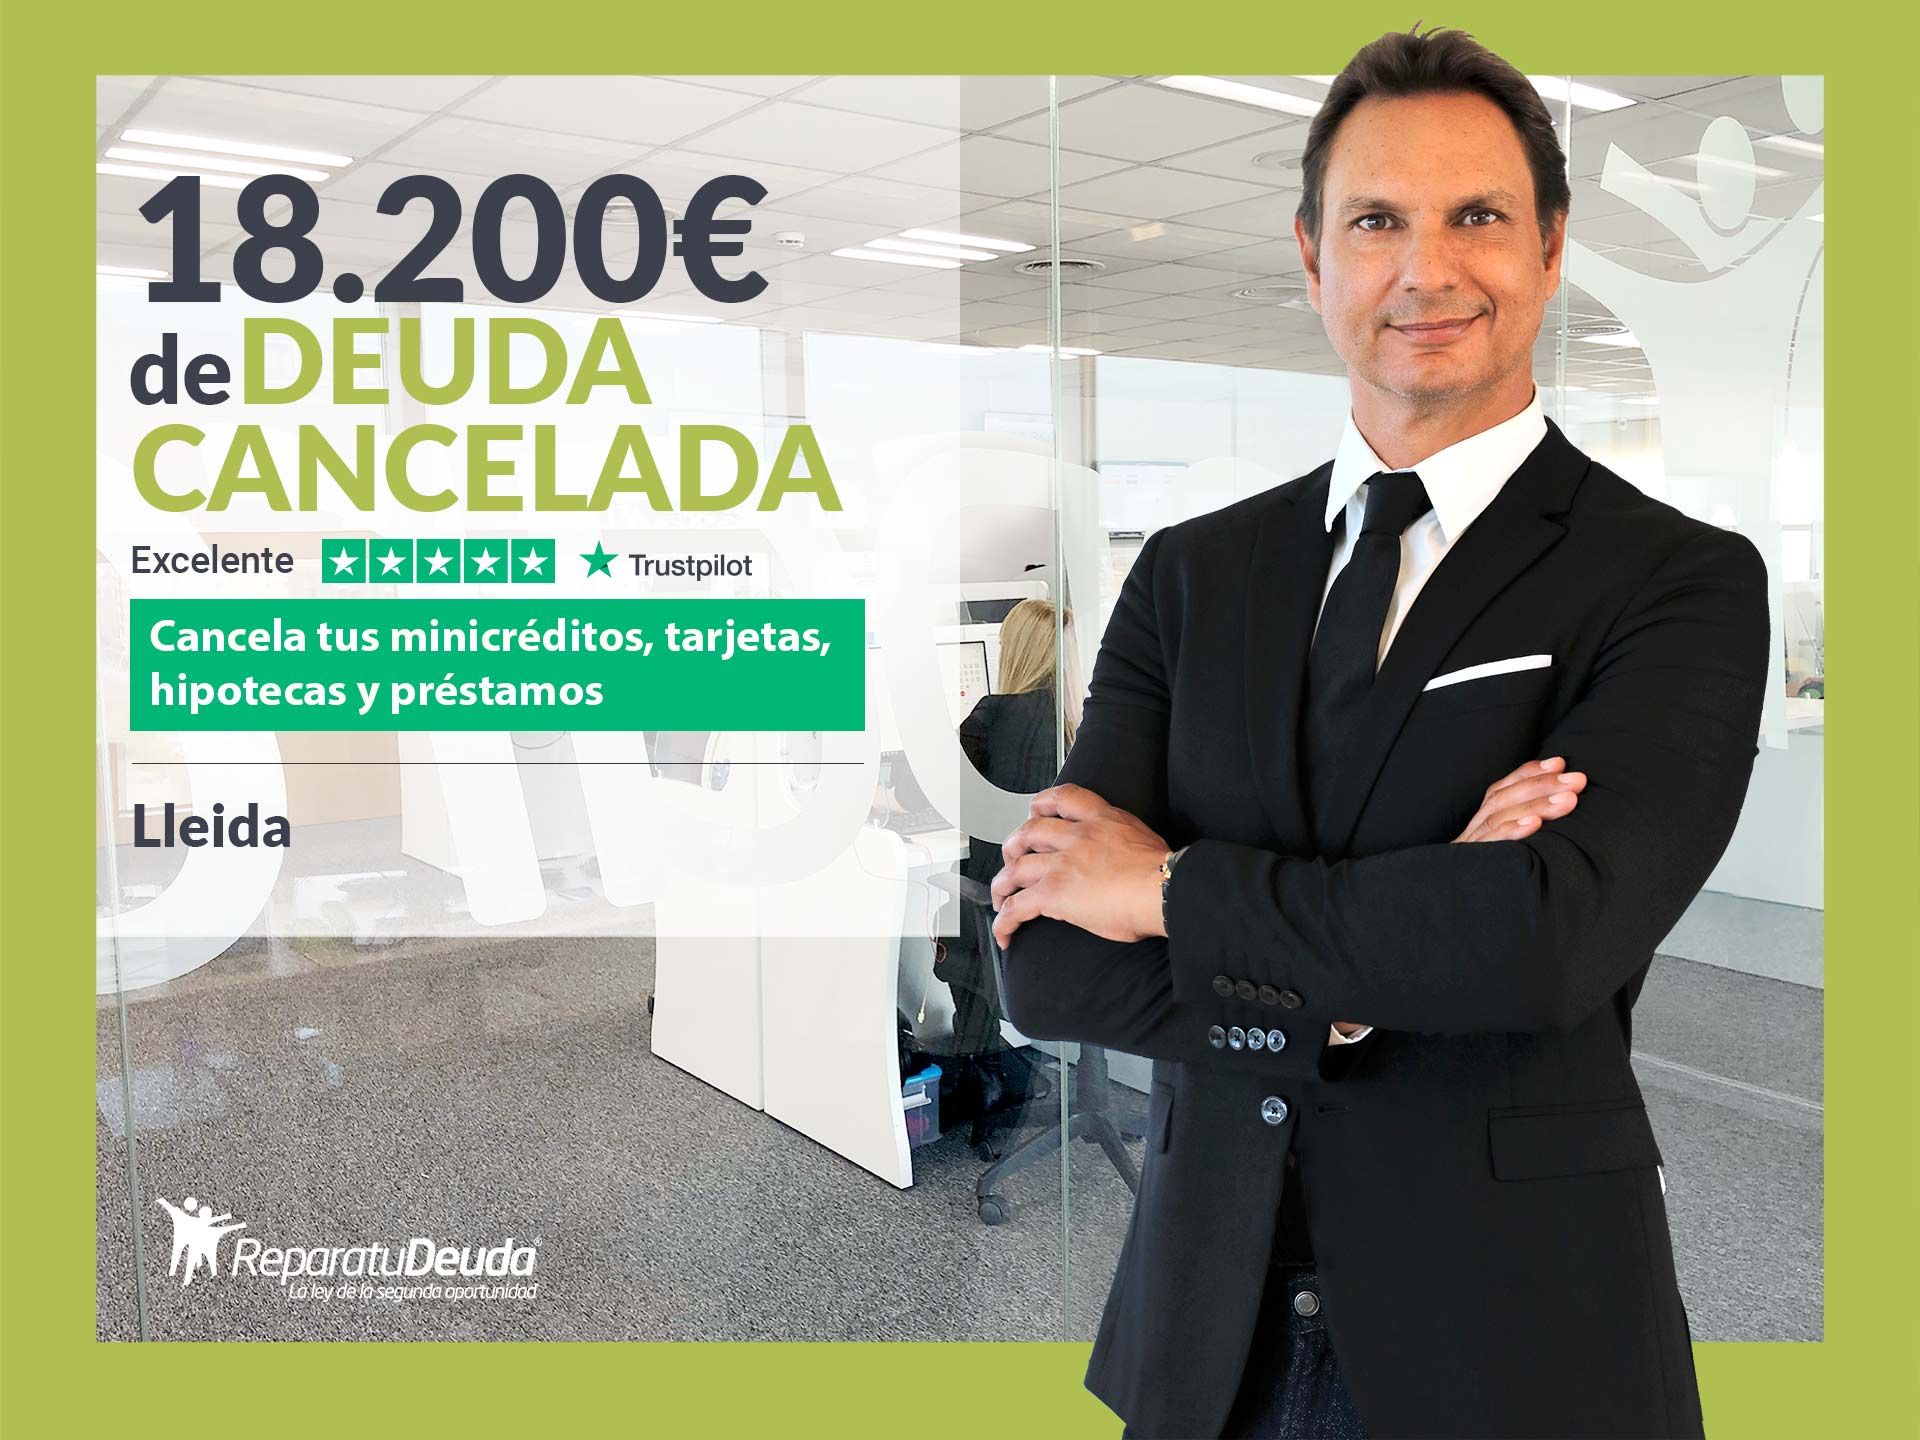 Repara tu Deuda Abogados cancela 18.200? en Lleida (Catalunya) con la Ley de la Segunda Oportunidad